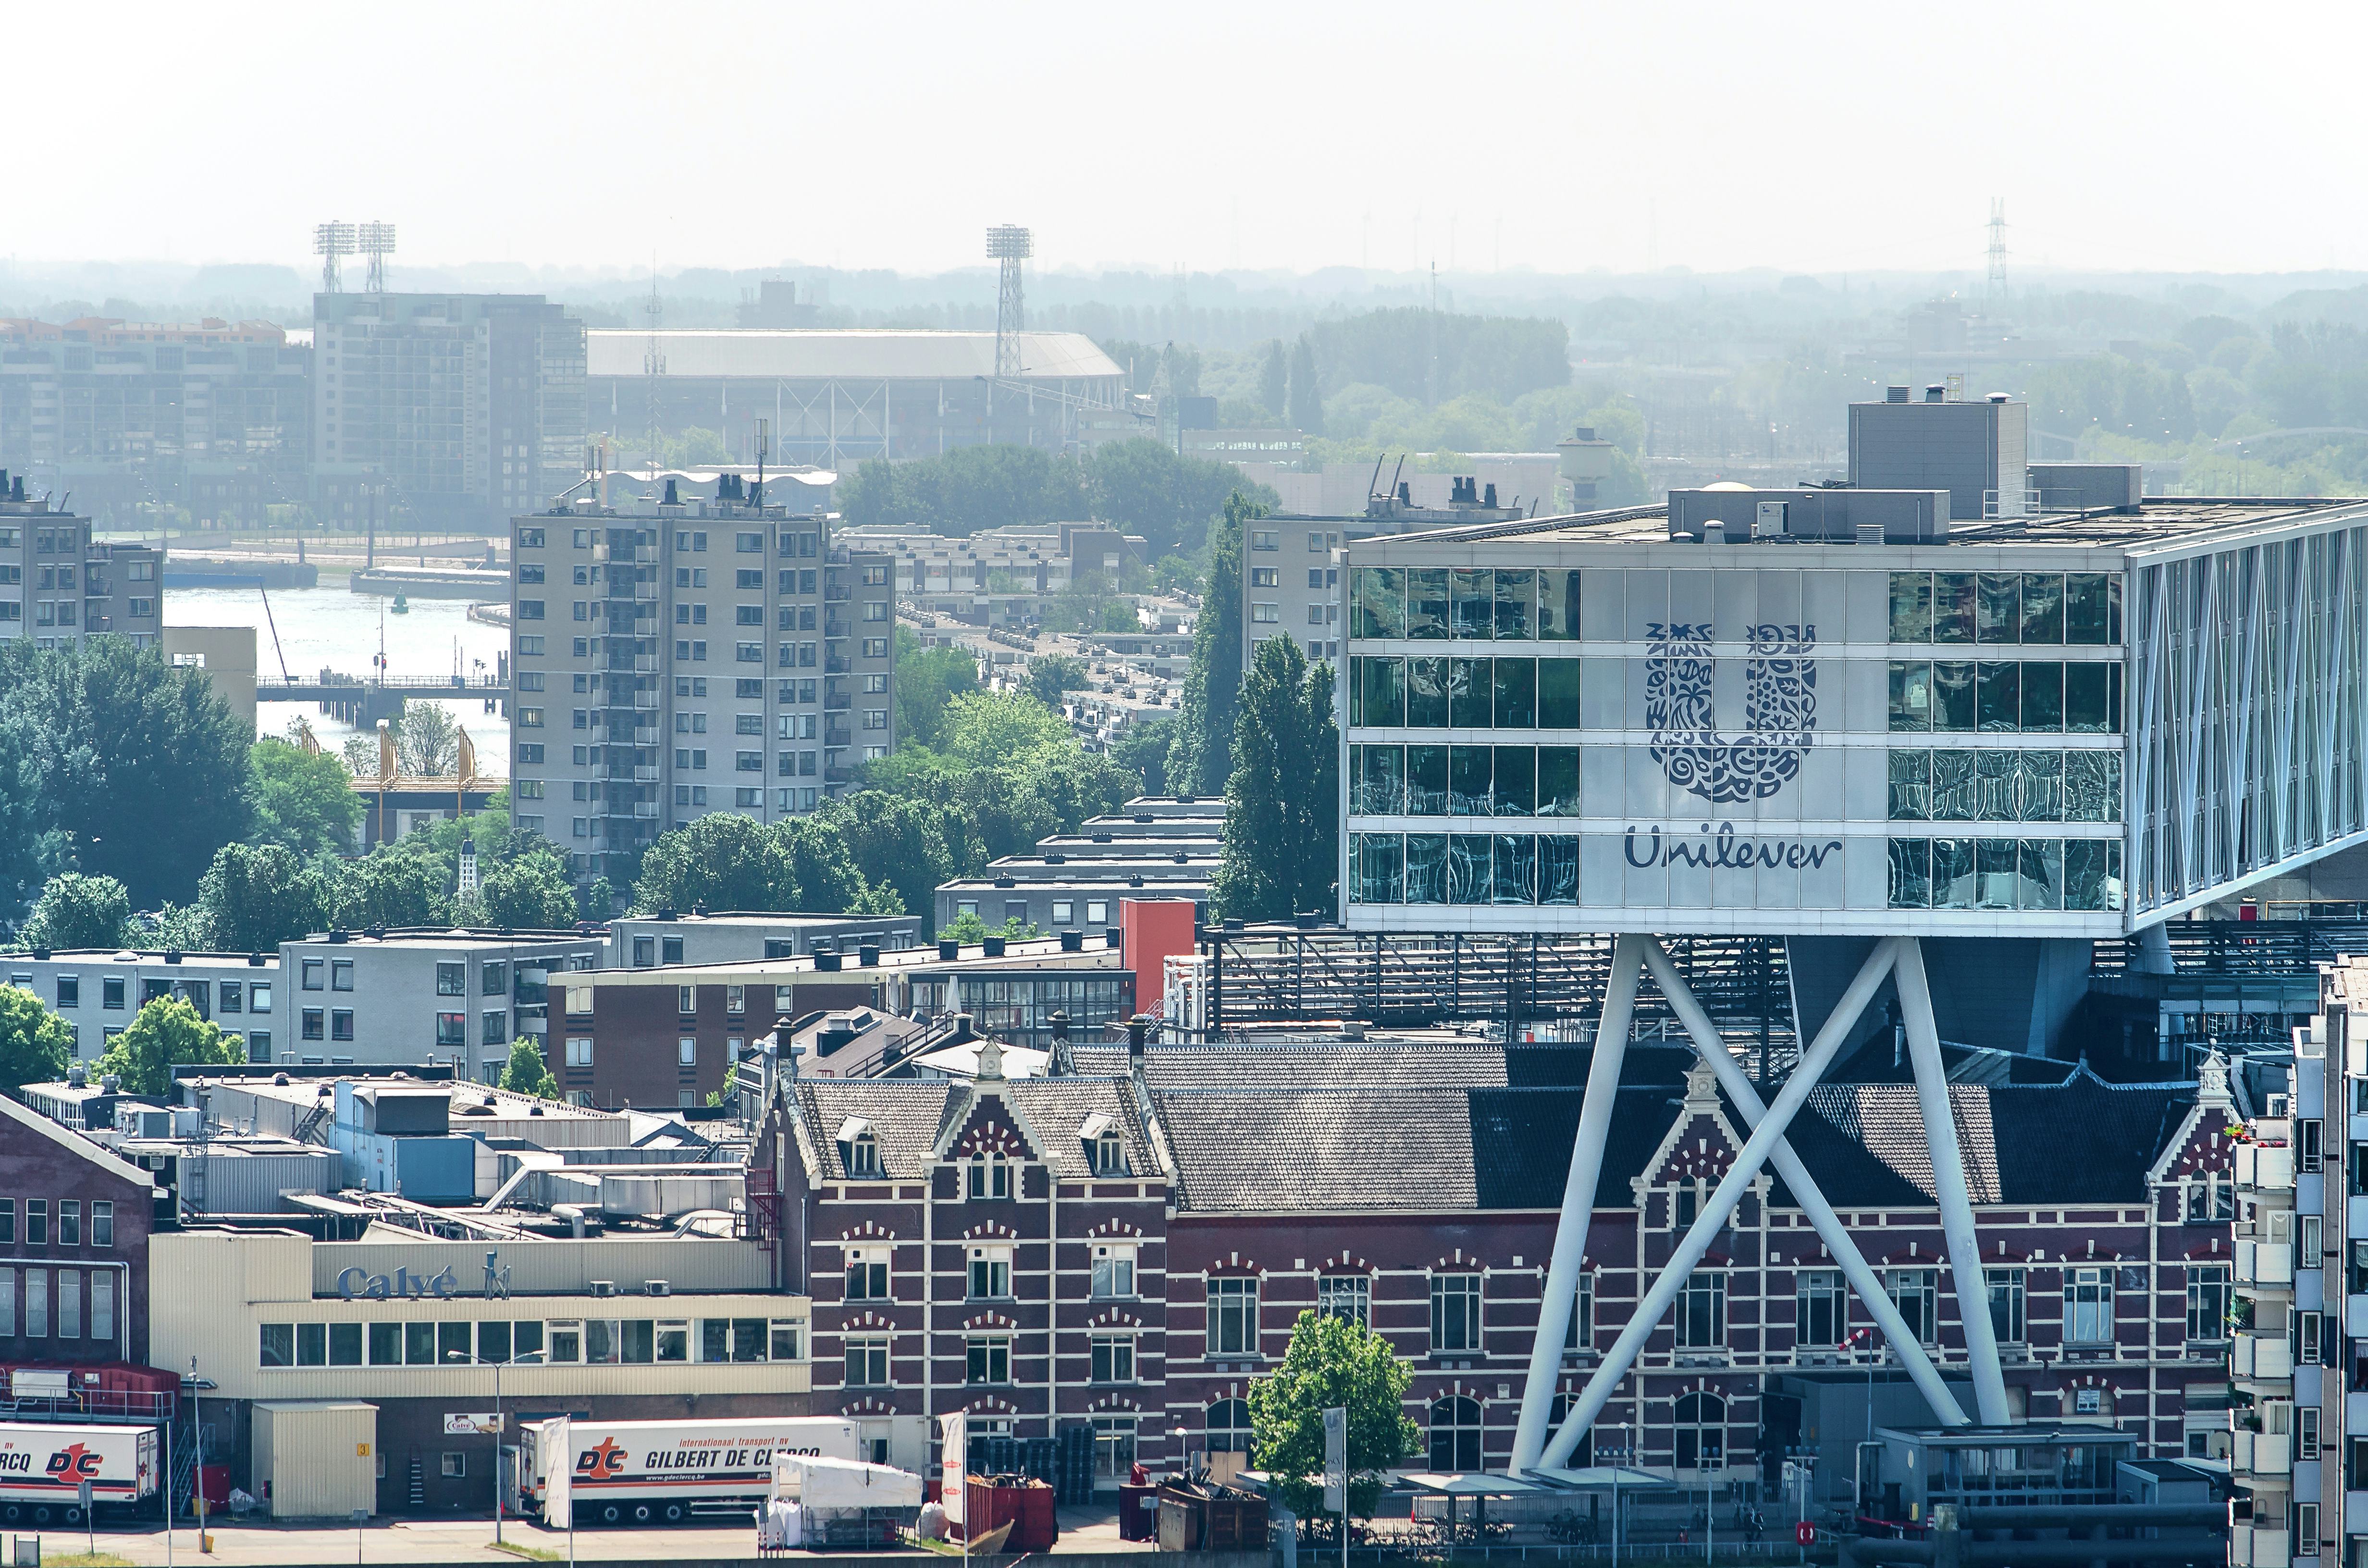 De Brug (kantoor Unilever) in Rotterdam. Beeld Shutterstock